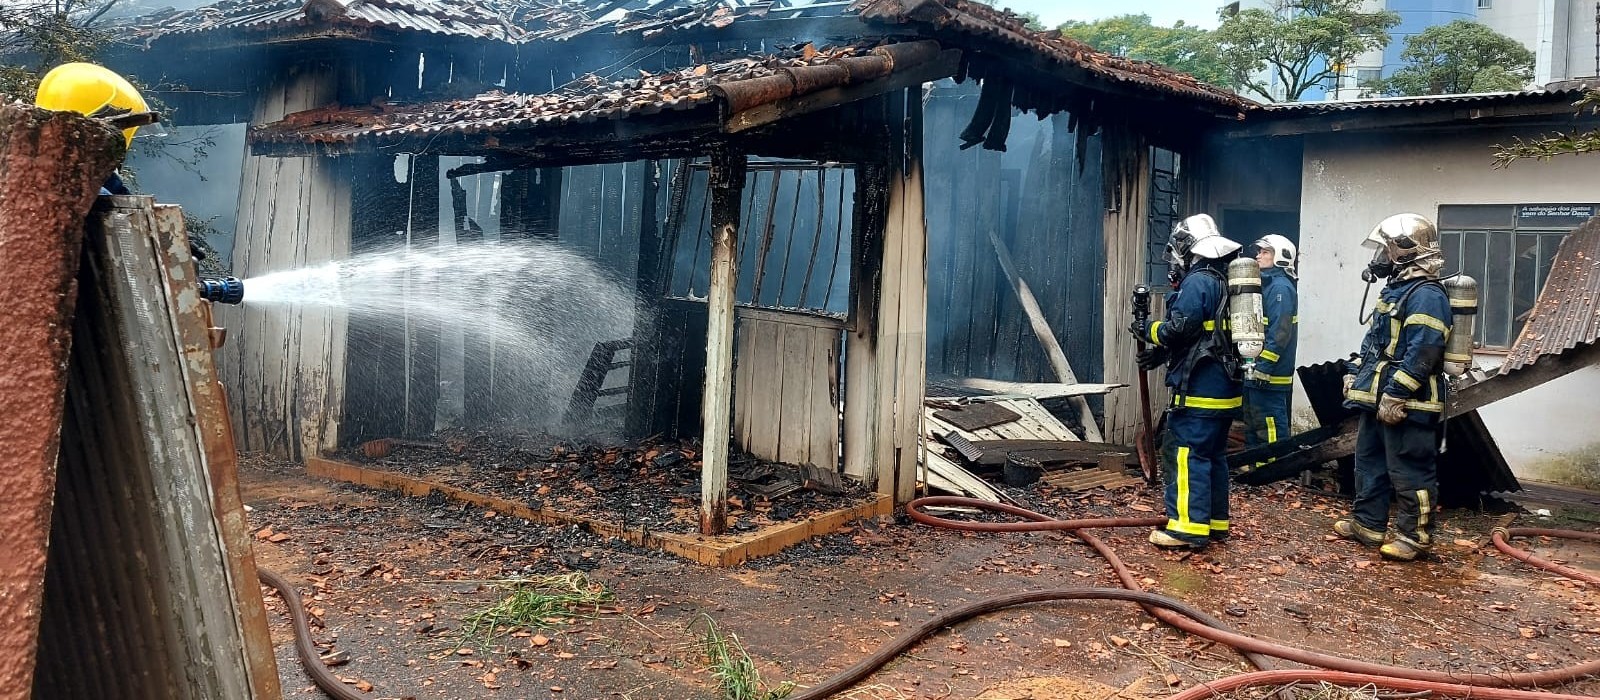 Incêndio destrói casa localizada na Zona 7, em Maringá